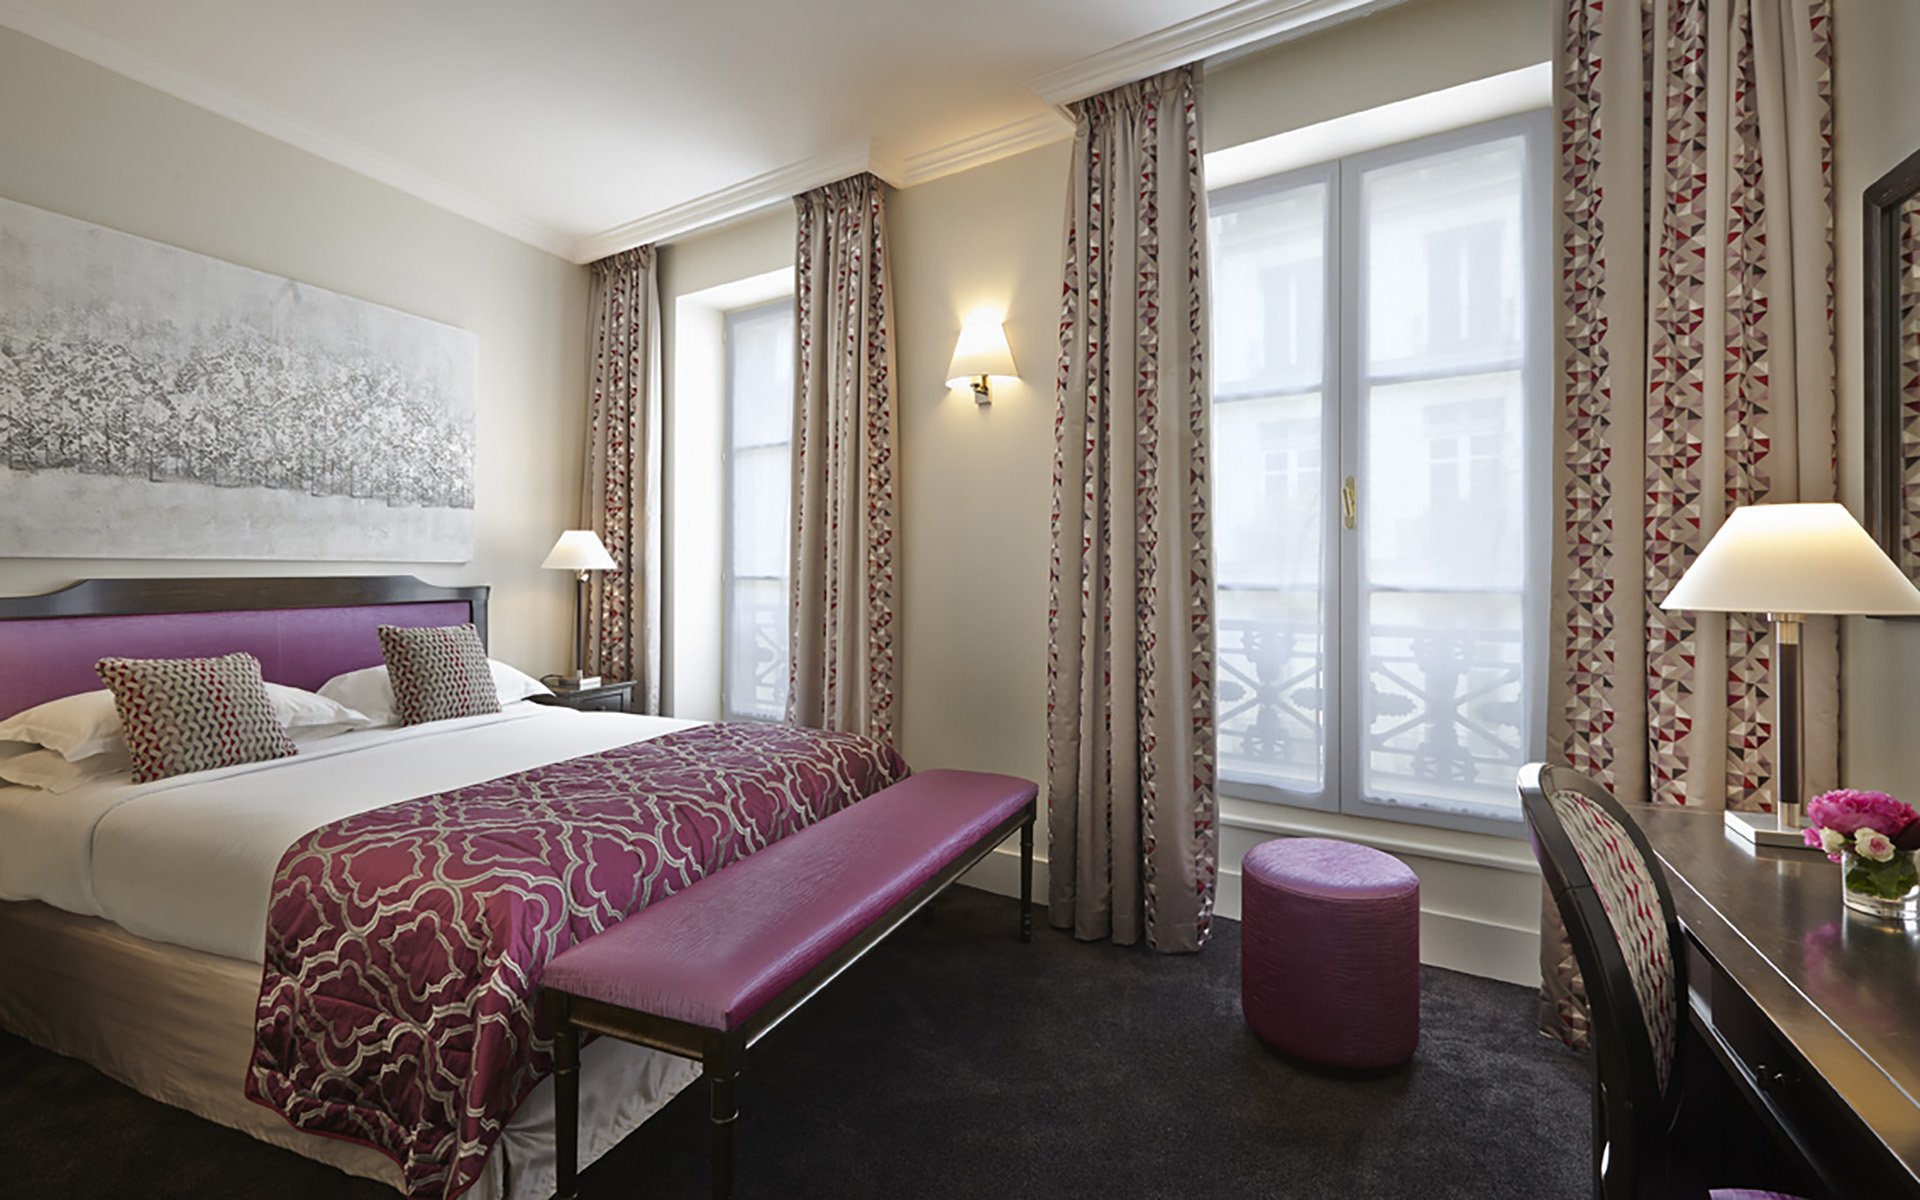 Superior Room, Hotel Paris rue Saint Honoré, 4 star hotel Paris Louvre Vendôme, 4 star hotel Saint Honoré